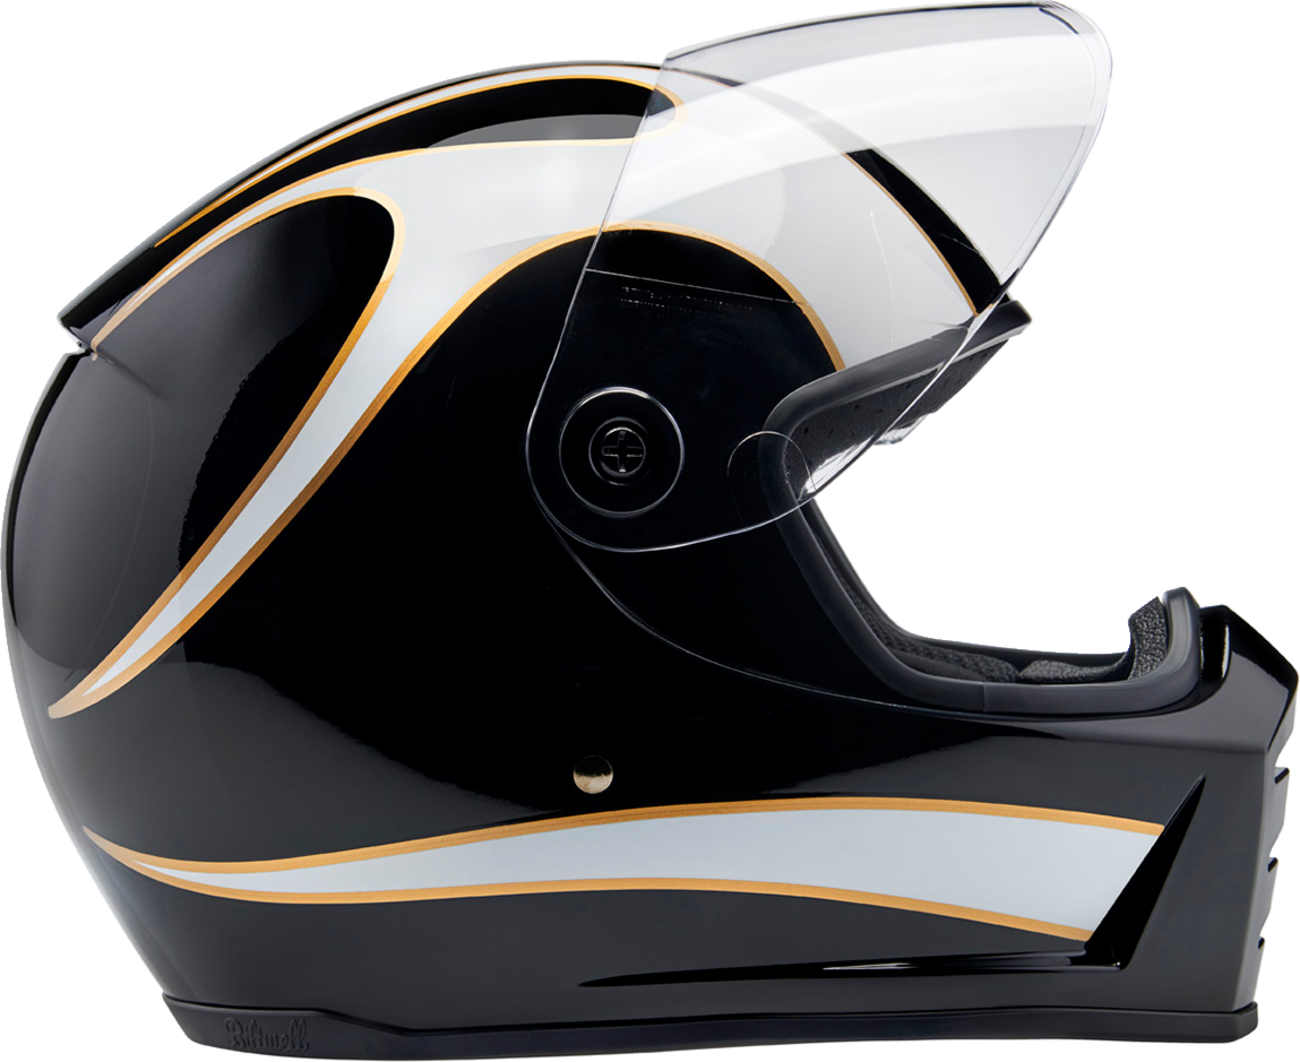 BILTWELL Lane Splitter Helmet - Gloss Black/White Flames - XL 1004-570-505